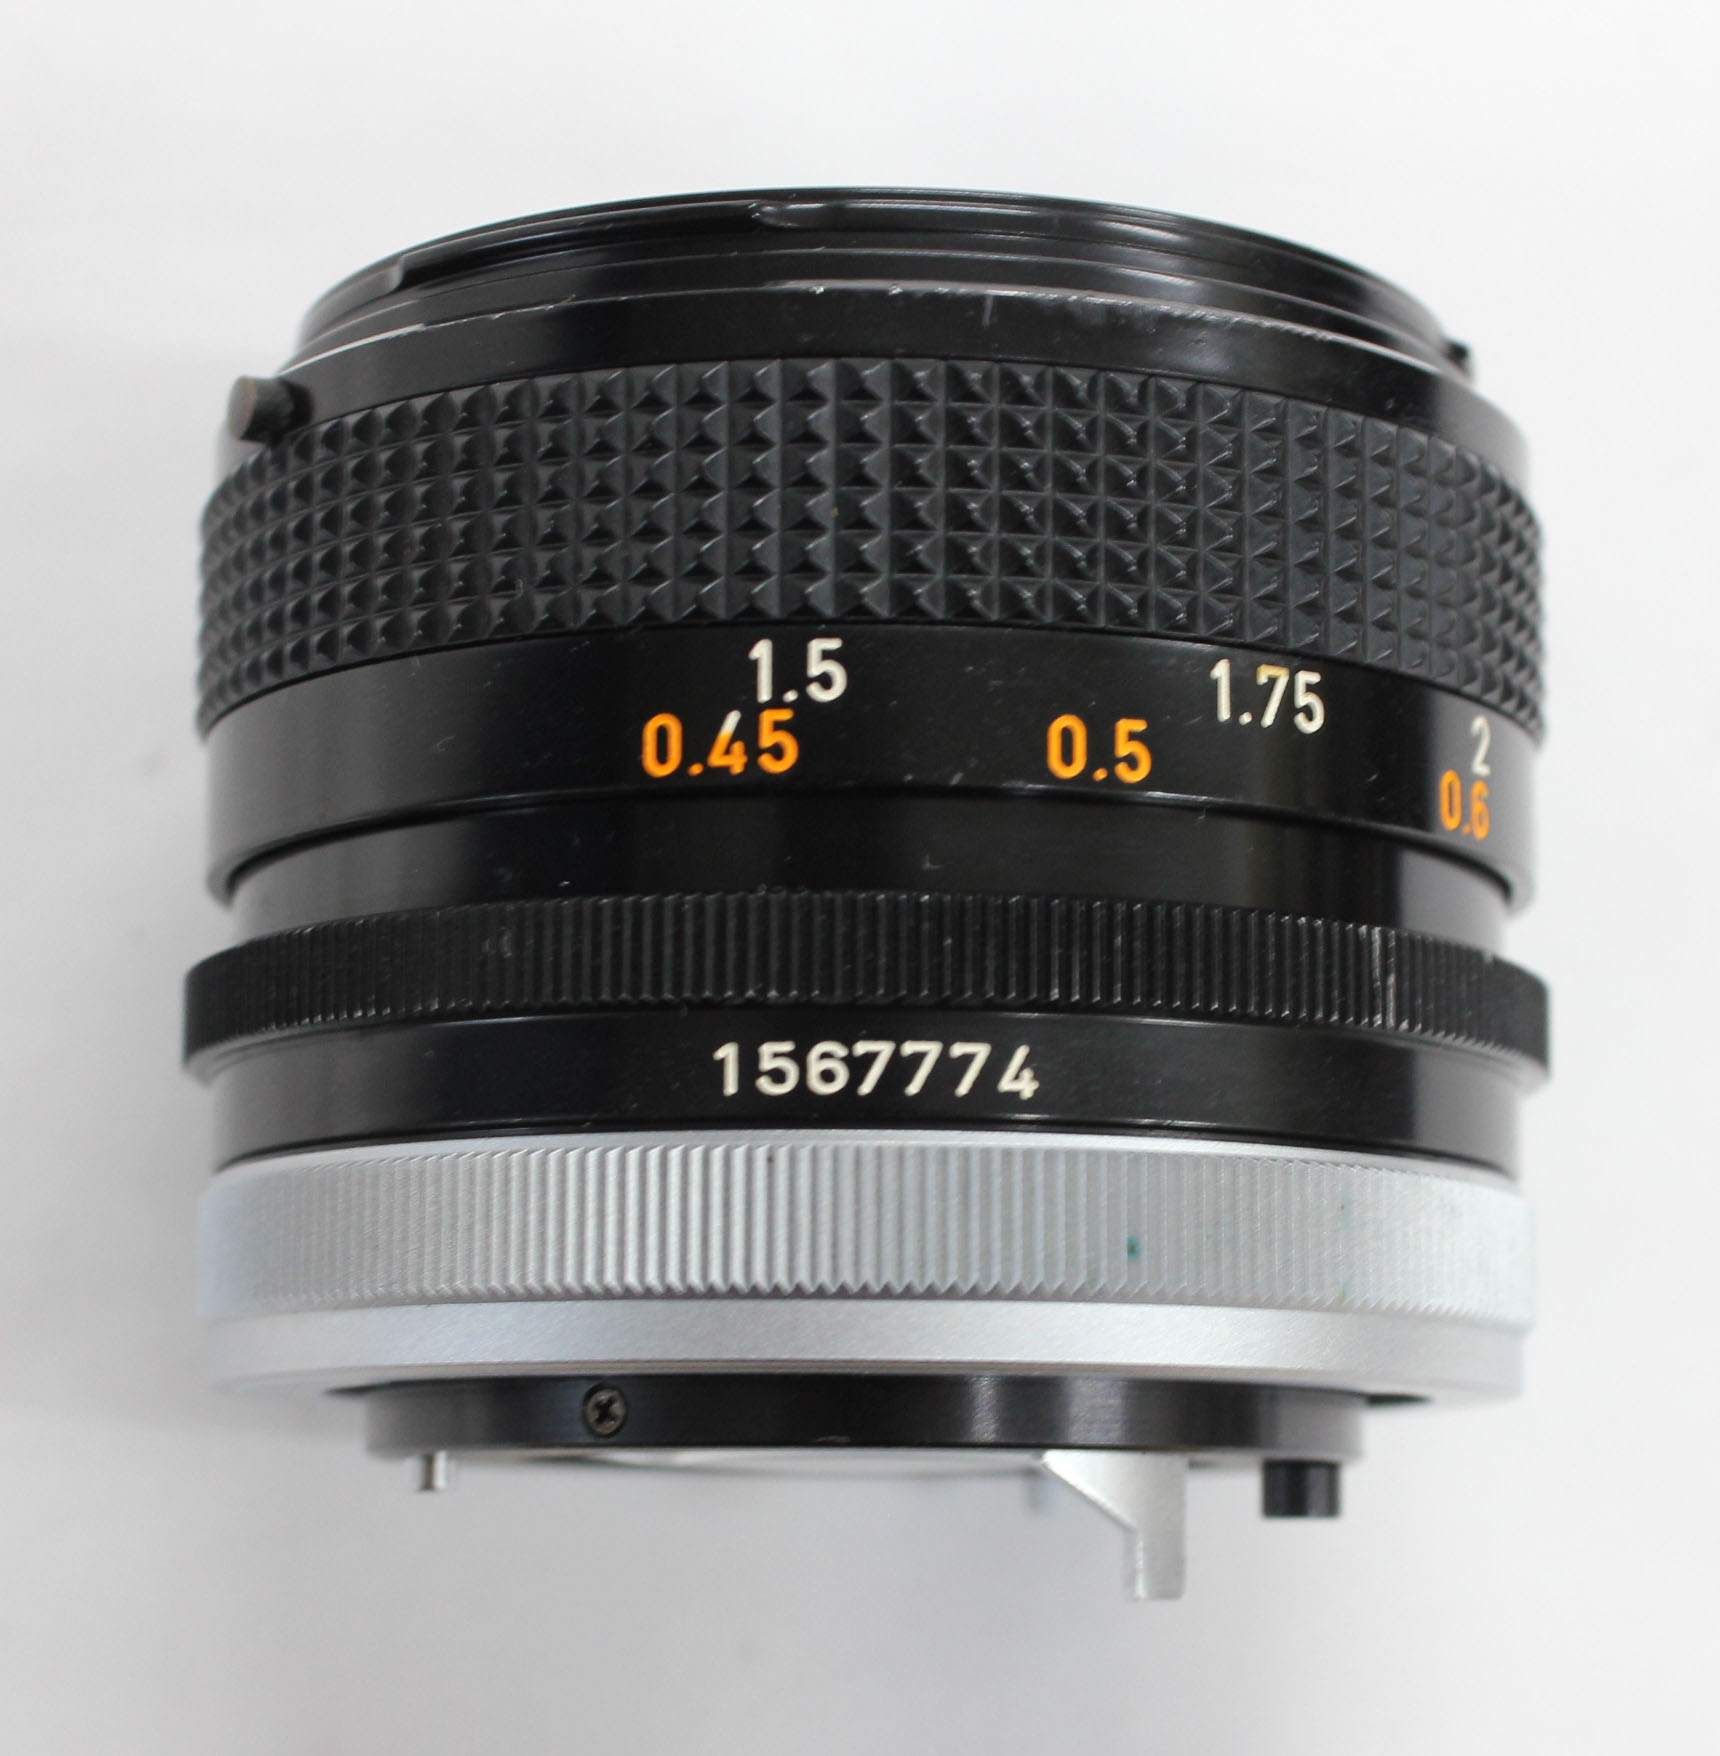 Canon AE-1 35mm SLR Camera with FD 50mm F/1.4 S.S.C. Lens from Japan Photo 15